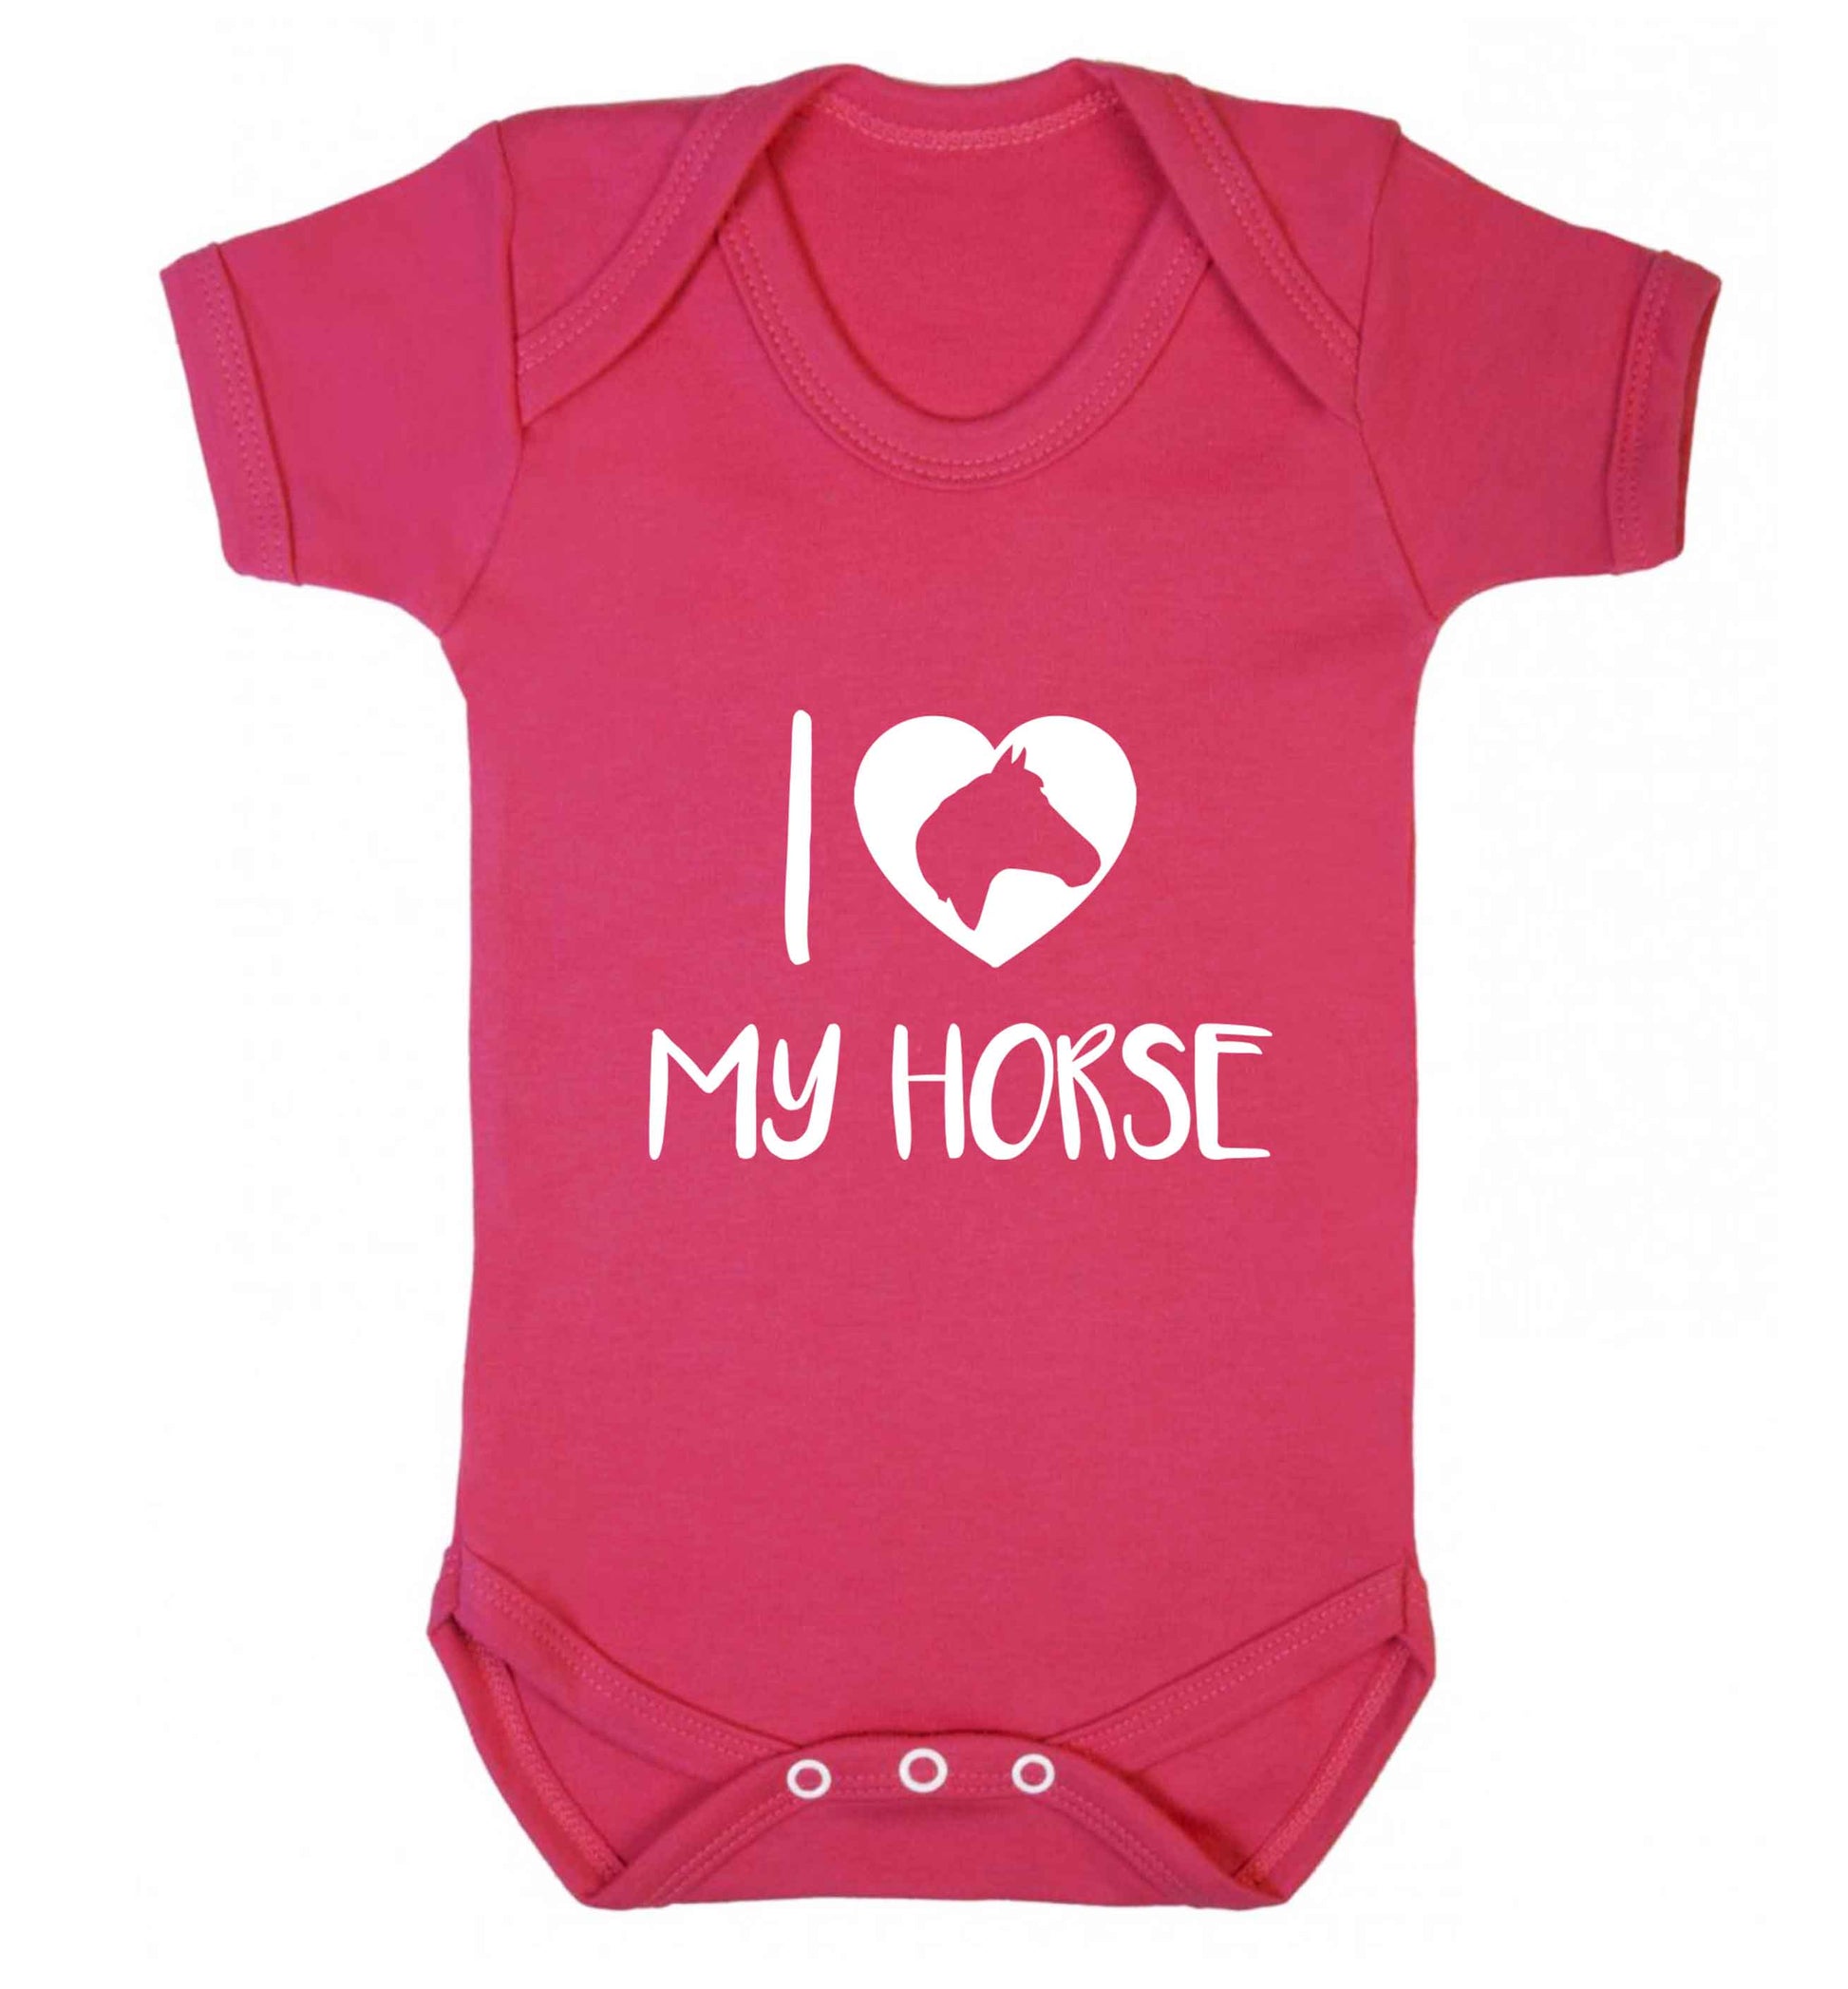 I love my horse baby vest dark pink 18-24 months